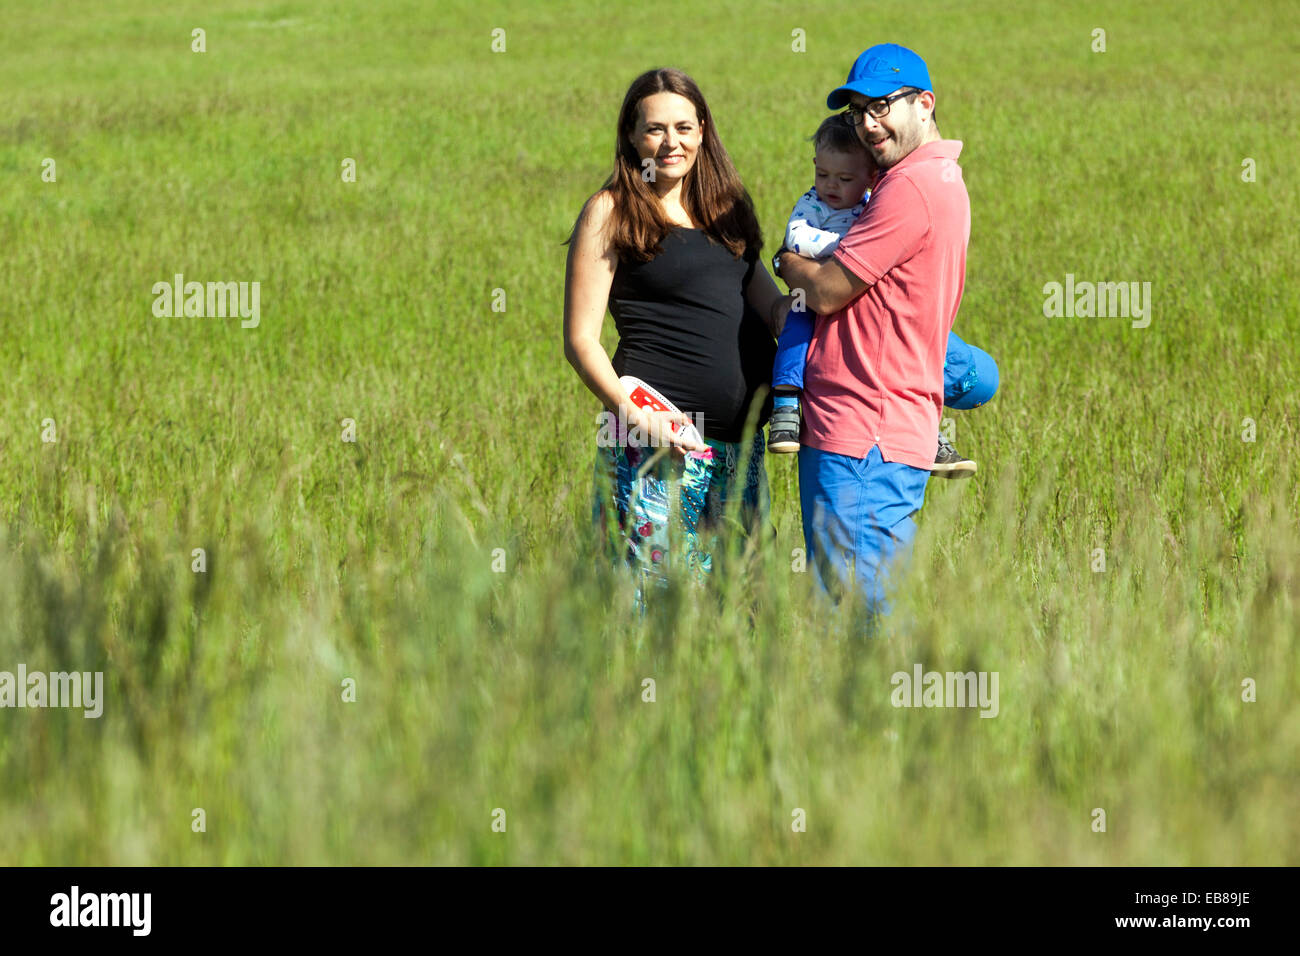 Une famille heureuse, une femme enceinte avec son mari et petit garçon passer du temps ensemble et de jouer à des jeux dans une prairie d'été Banque D'Images